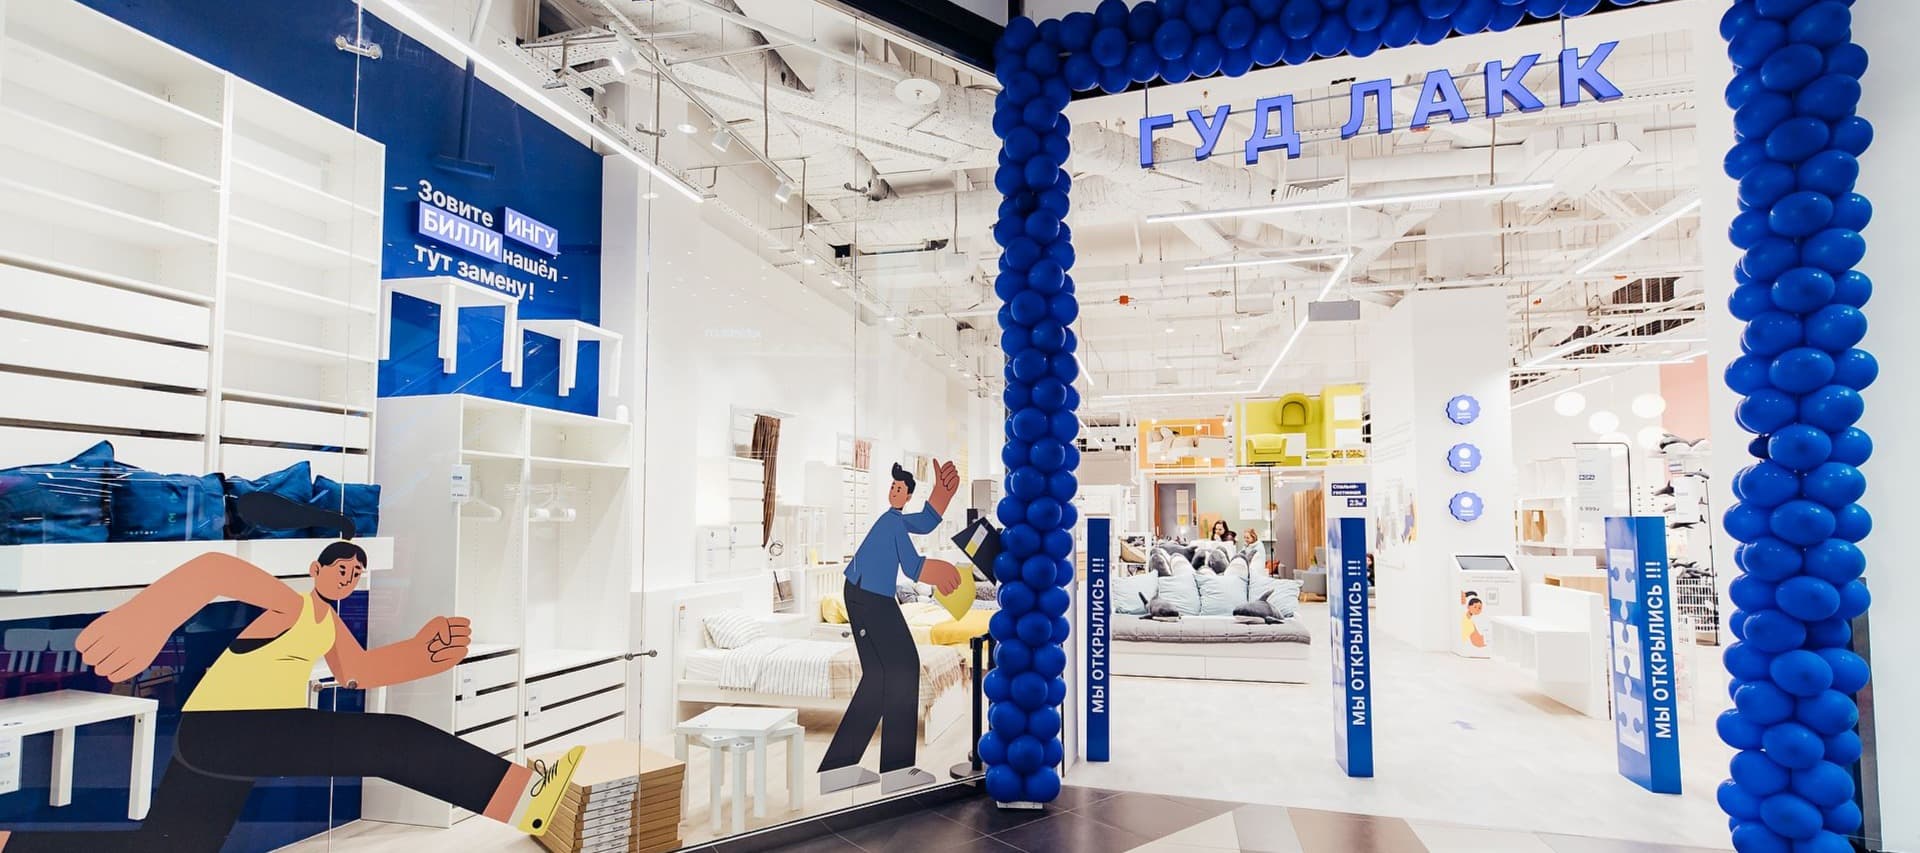 Фото новости: "Мебельный ритейлер «Гуд лакк» откроет 31 магазин в течение года"